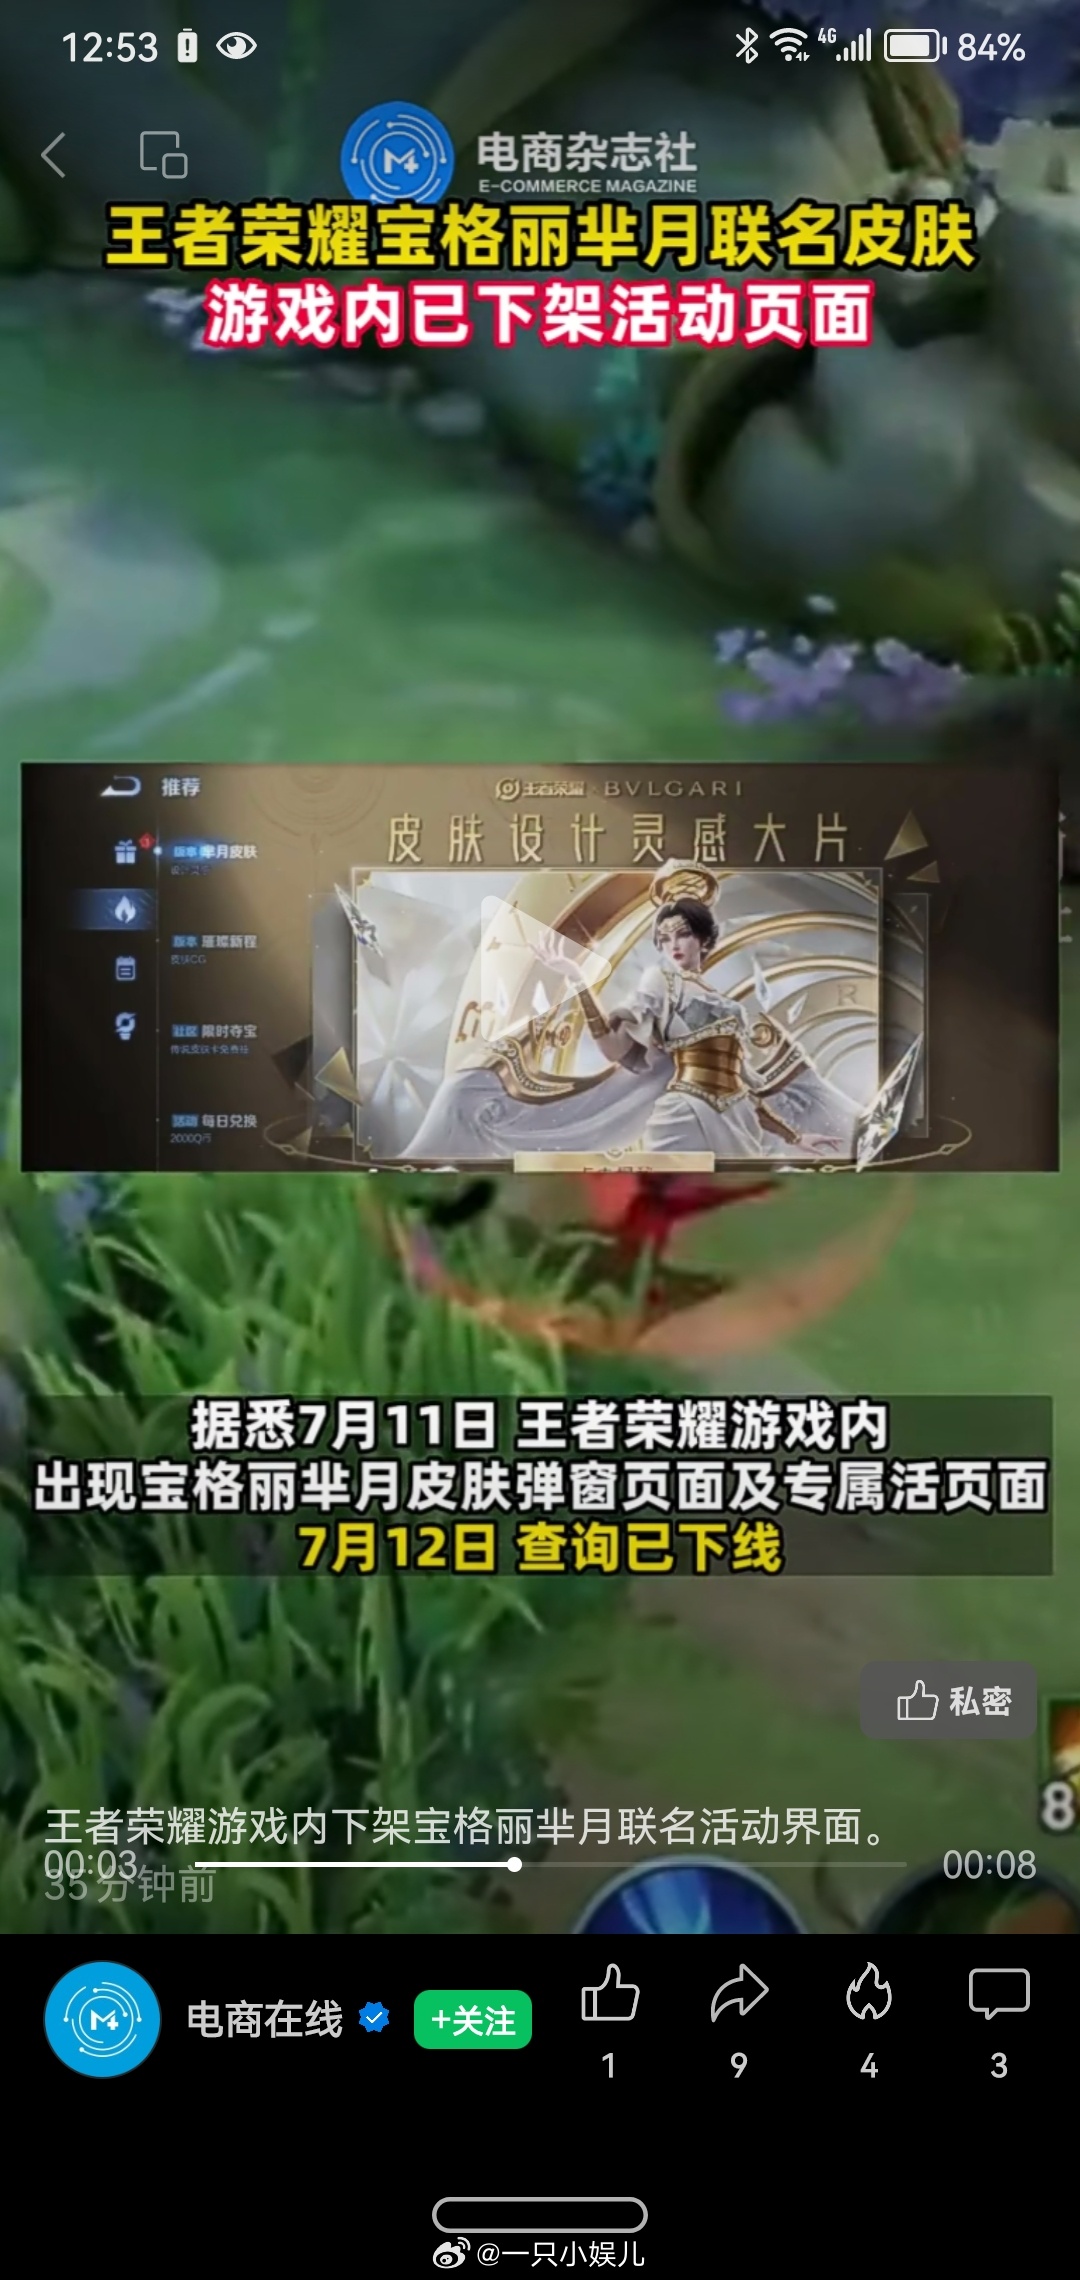 #王者荣耀游戏内下架宝格丽联名宣传页#王者荣耀游戏内下架宝格丽芈月联名活动界面。